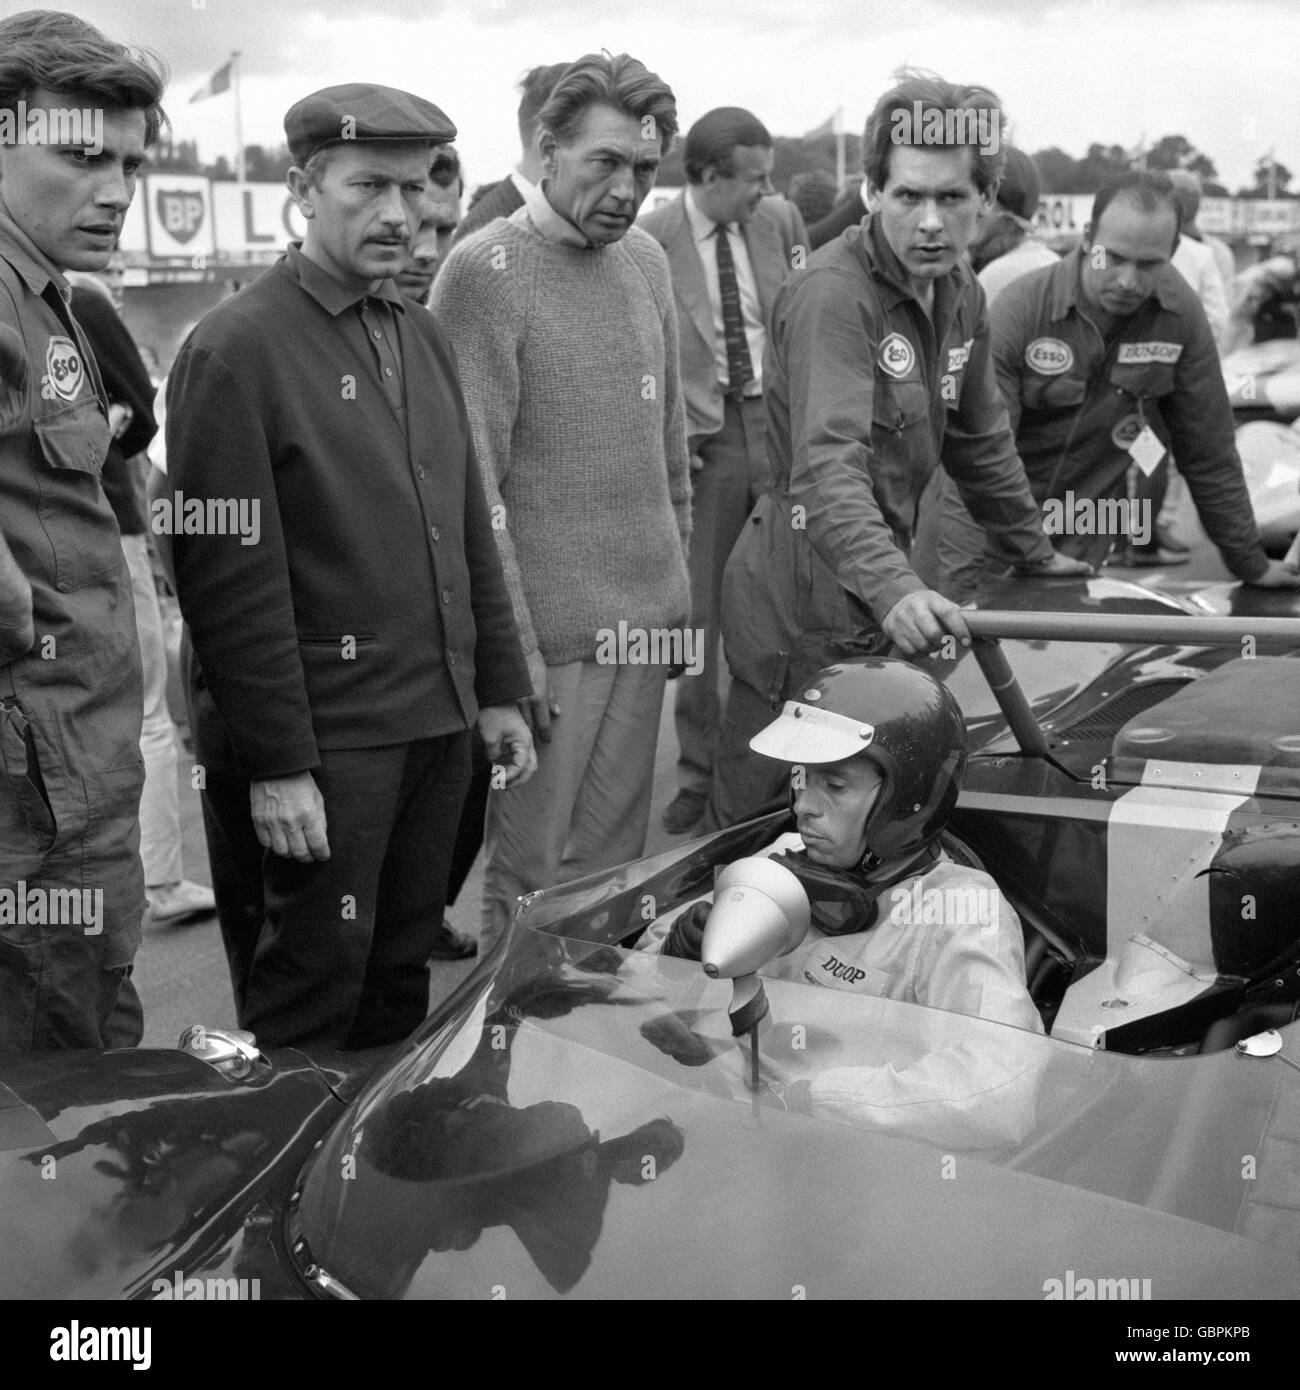 Il boss del team Lotus Colin Chapman, a sinistra con la testa piatta, ha un'espressione glum che si abbina a quella del nuovo campione del mondo del Gran Premio Jim Clark sulla griglia di partenza a Brands Hatch, Kent. Clark stava per guidare nella seconda parte della gara Guards International Trophy, ma soffriva di problemi al motore. Foto Stock